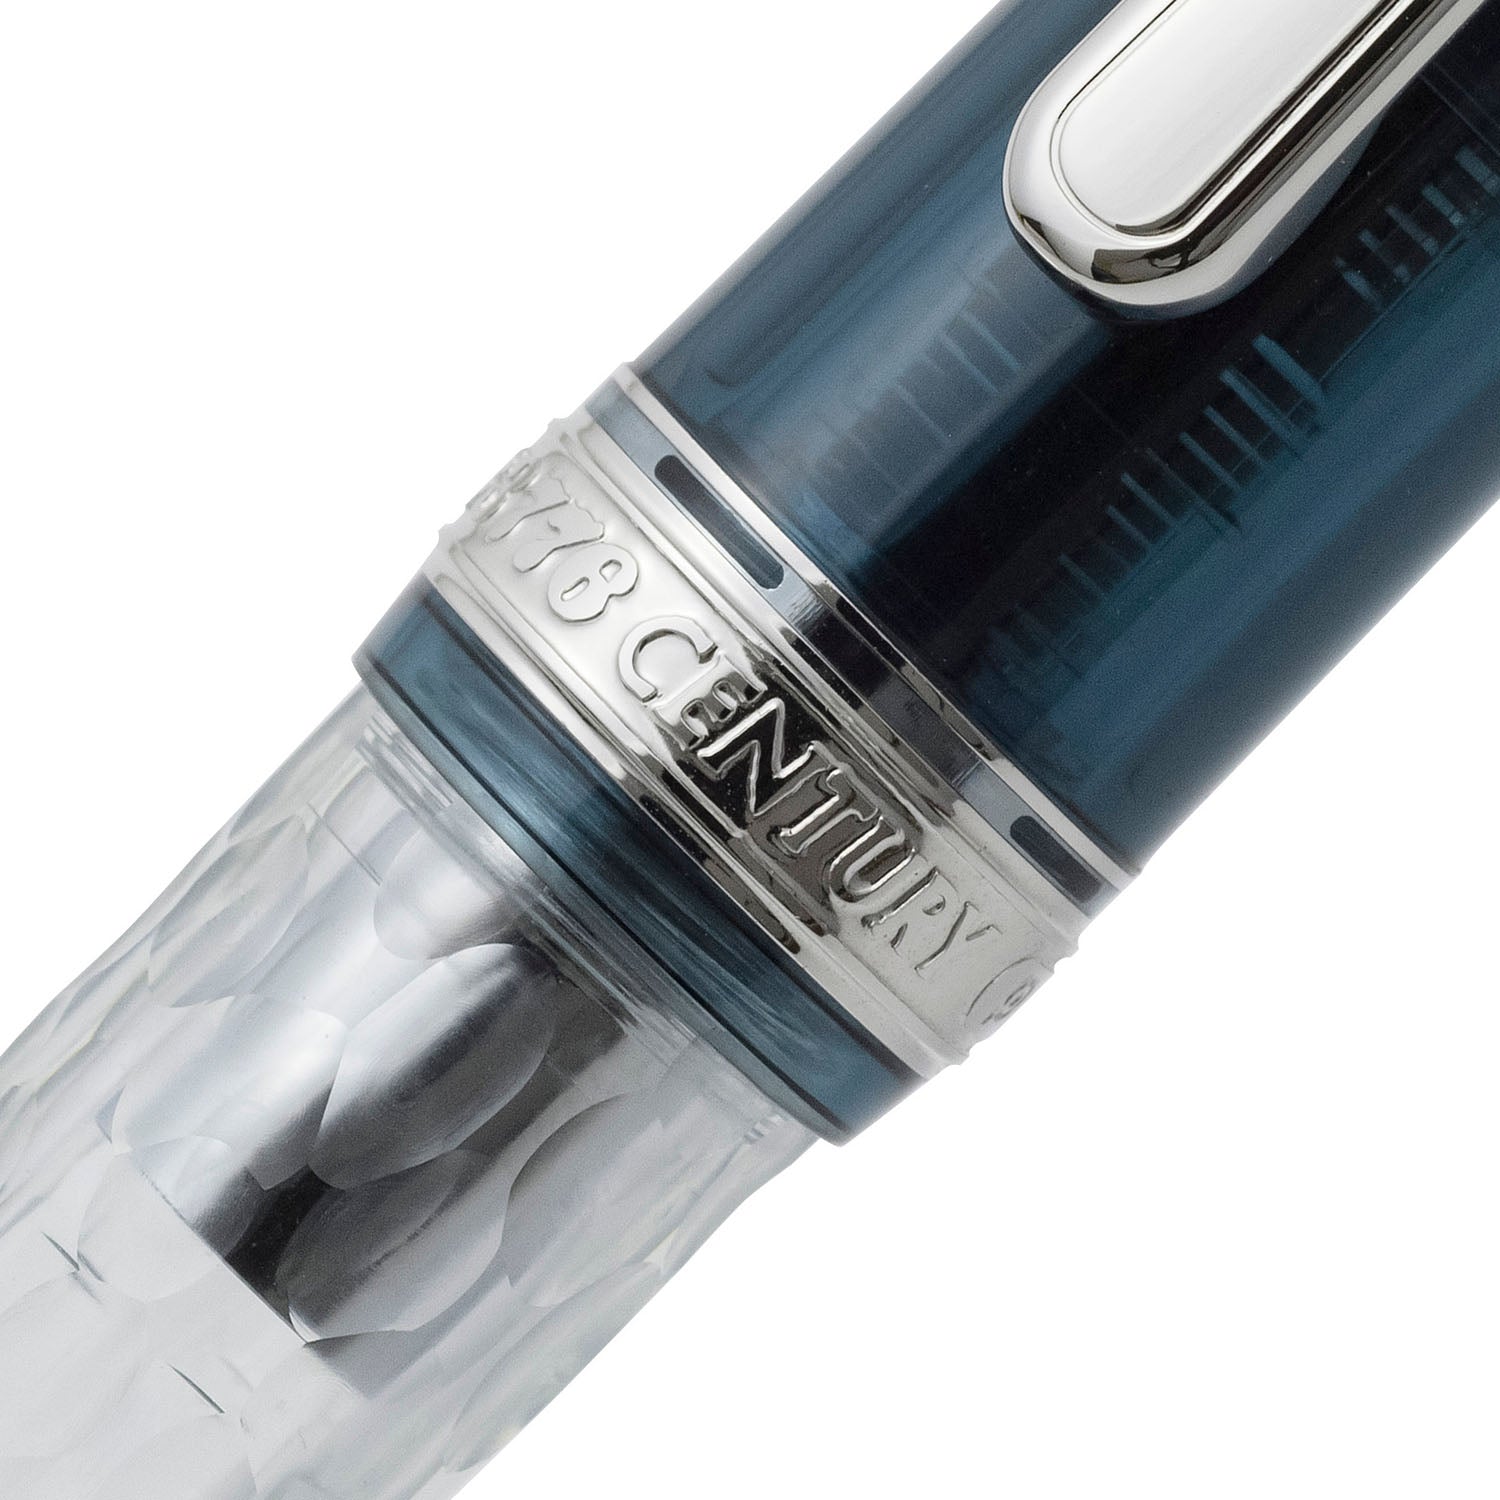 Platinum Uroko-Gumo Fountain Pen Cap ring detail